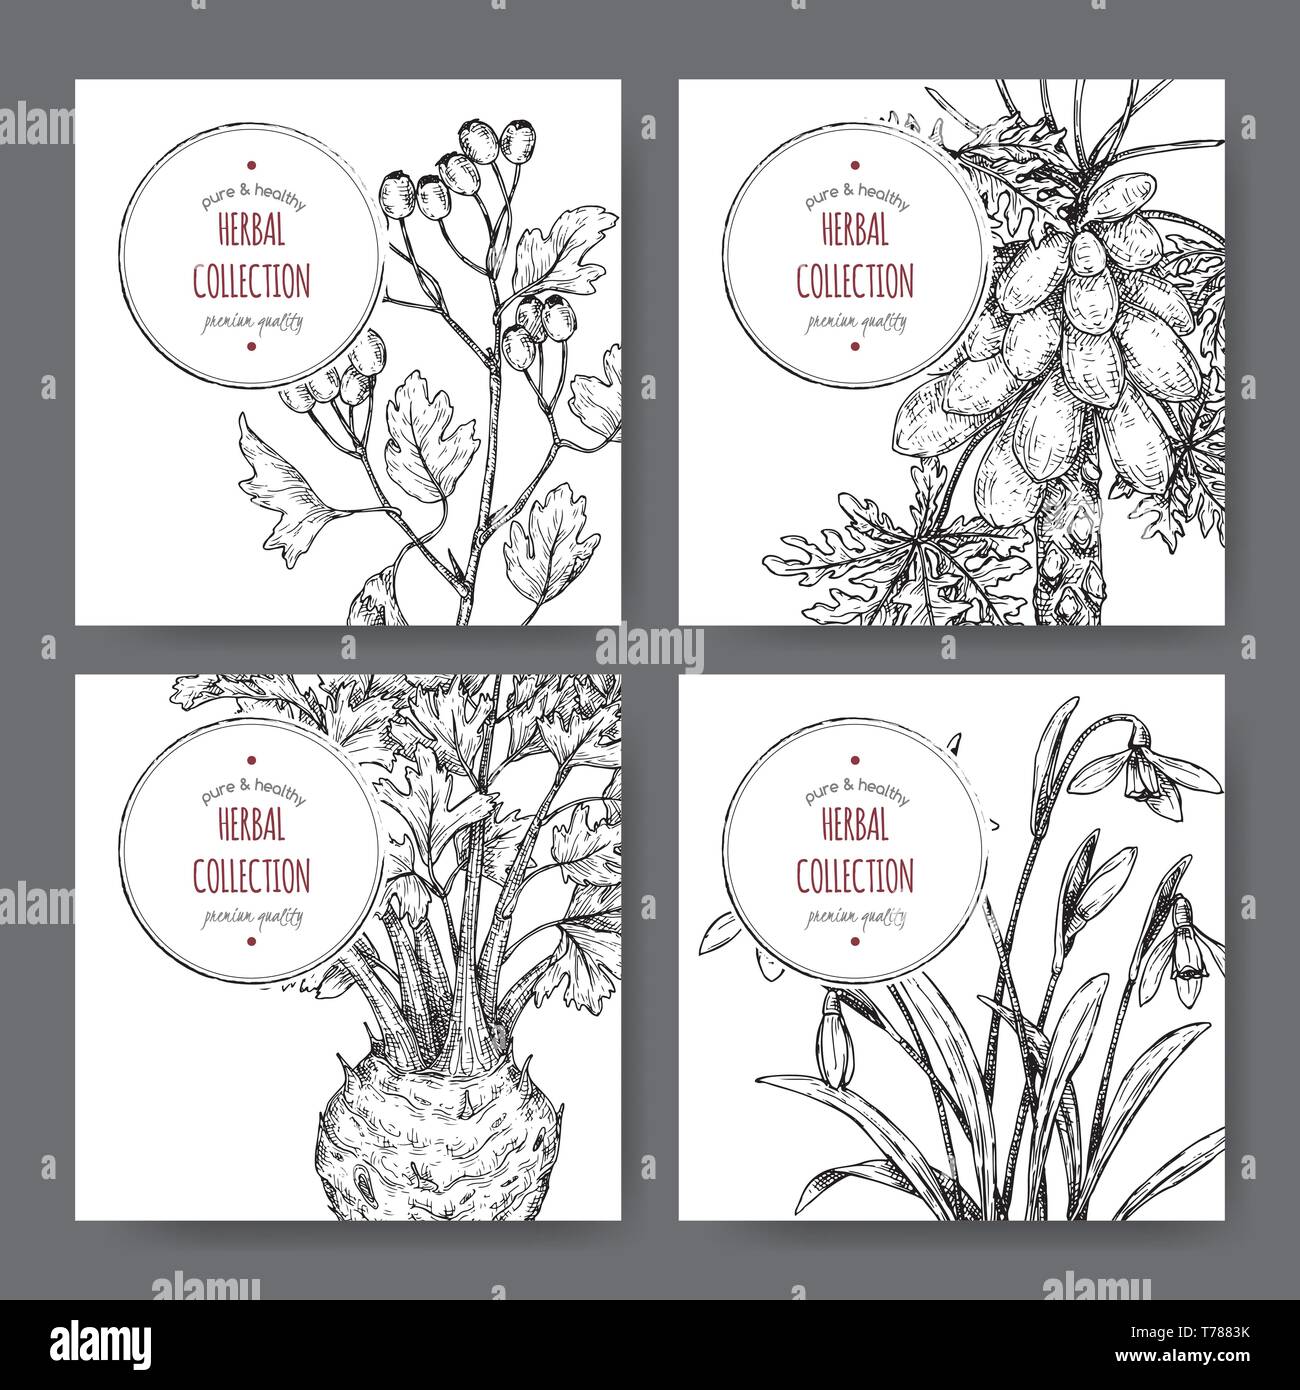 Vier Etiketten mit Common Hawthorn, Sellerie, papaya Baum und Schneeglöckchen Skizze. Stock Vektor